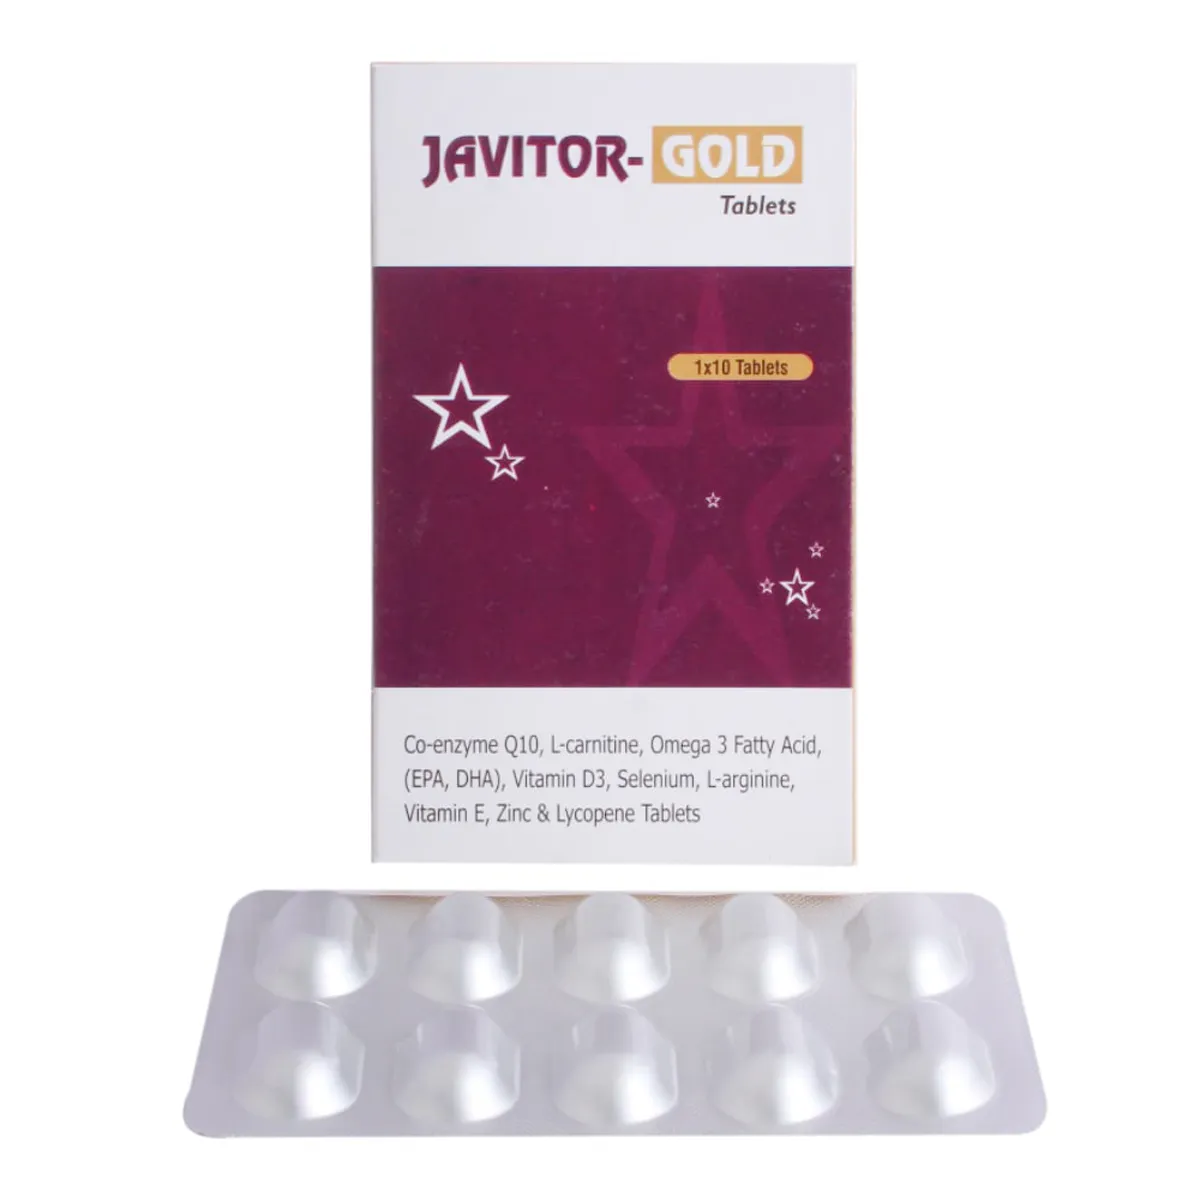 Javitor-Gold Tablet